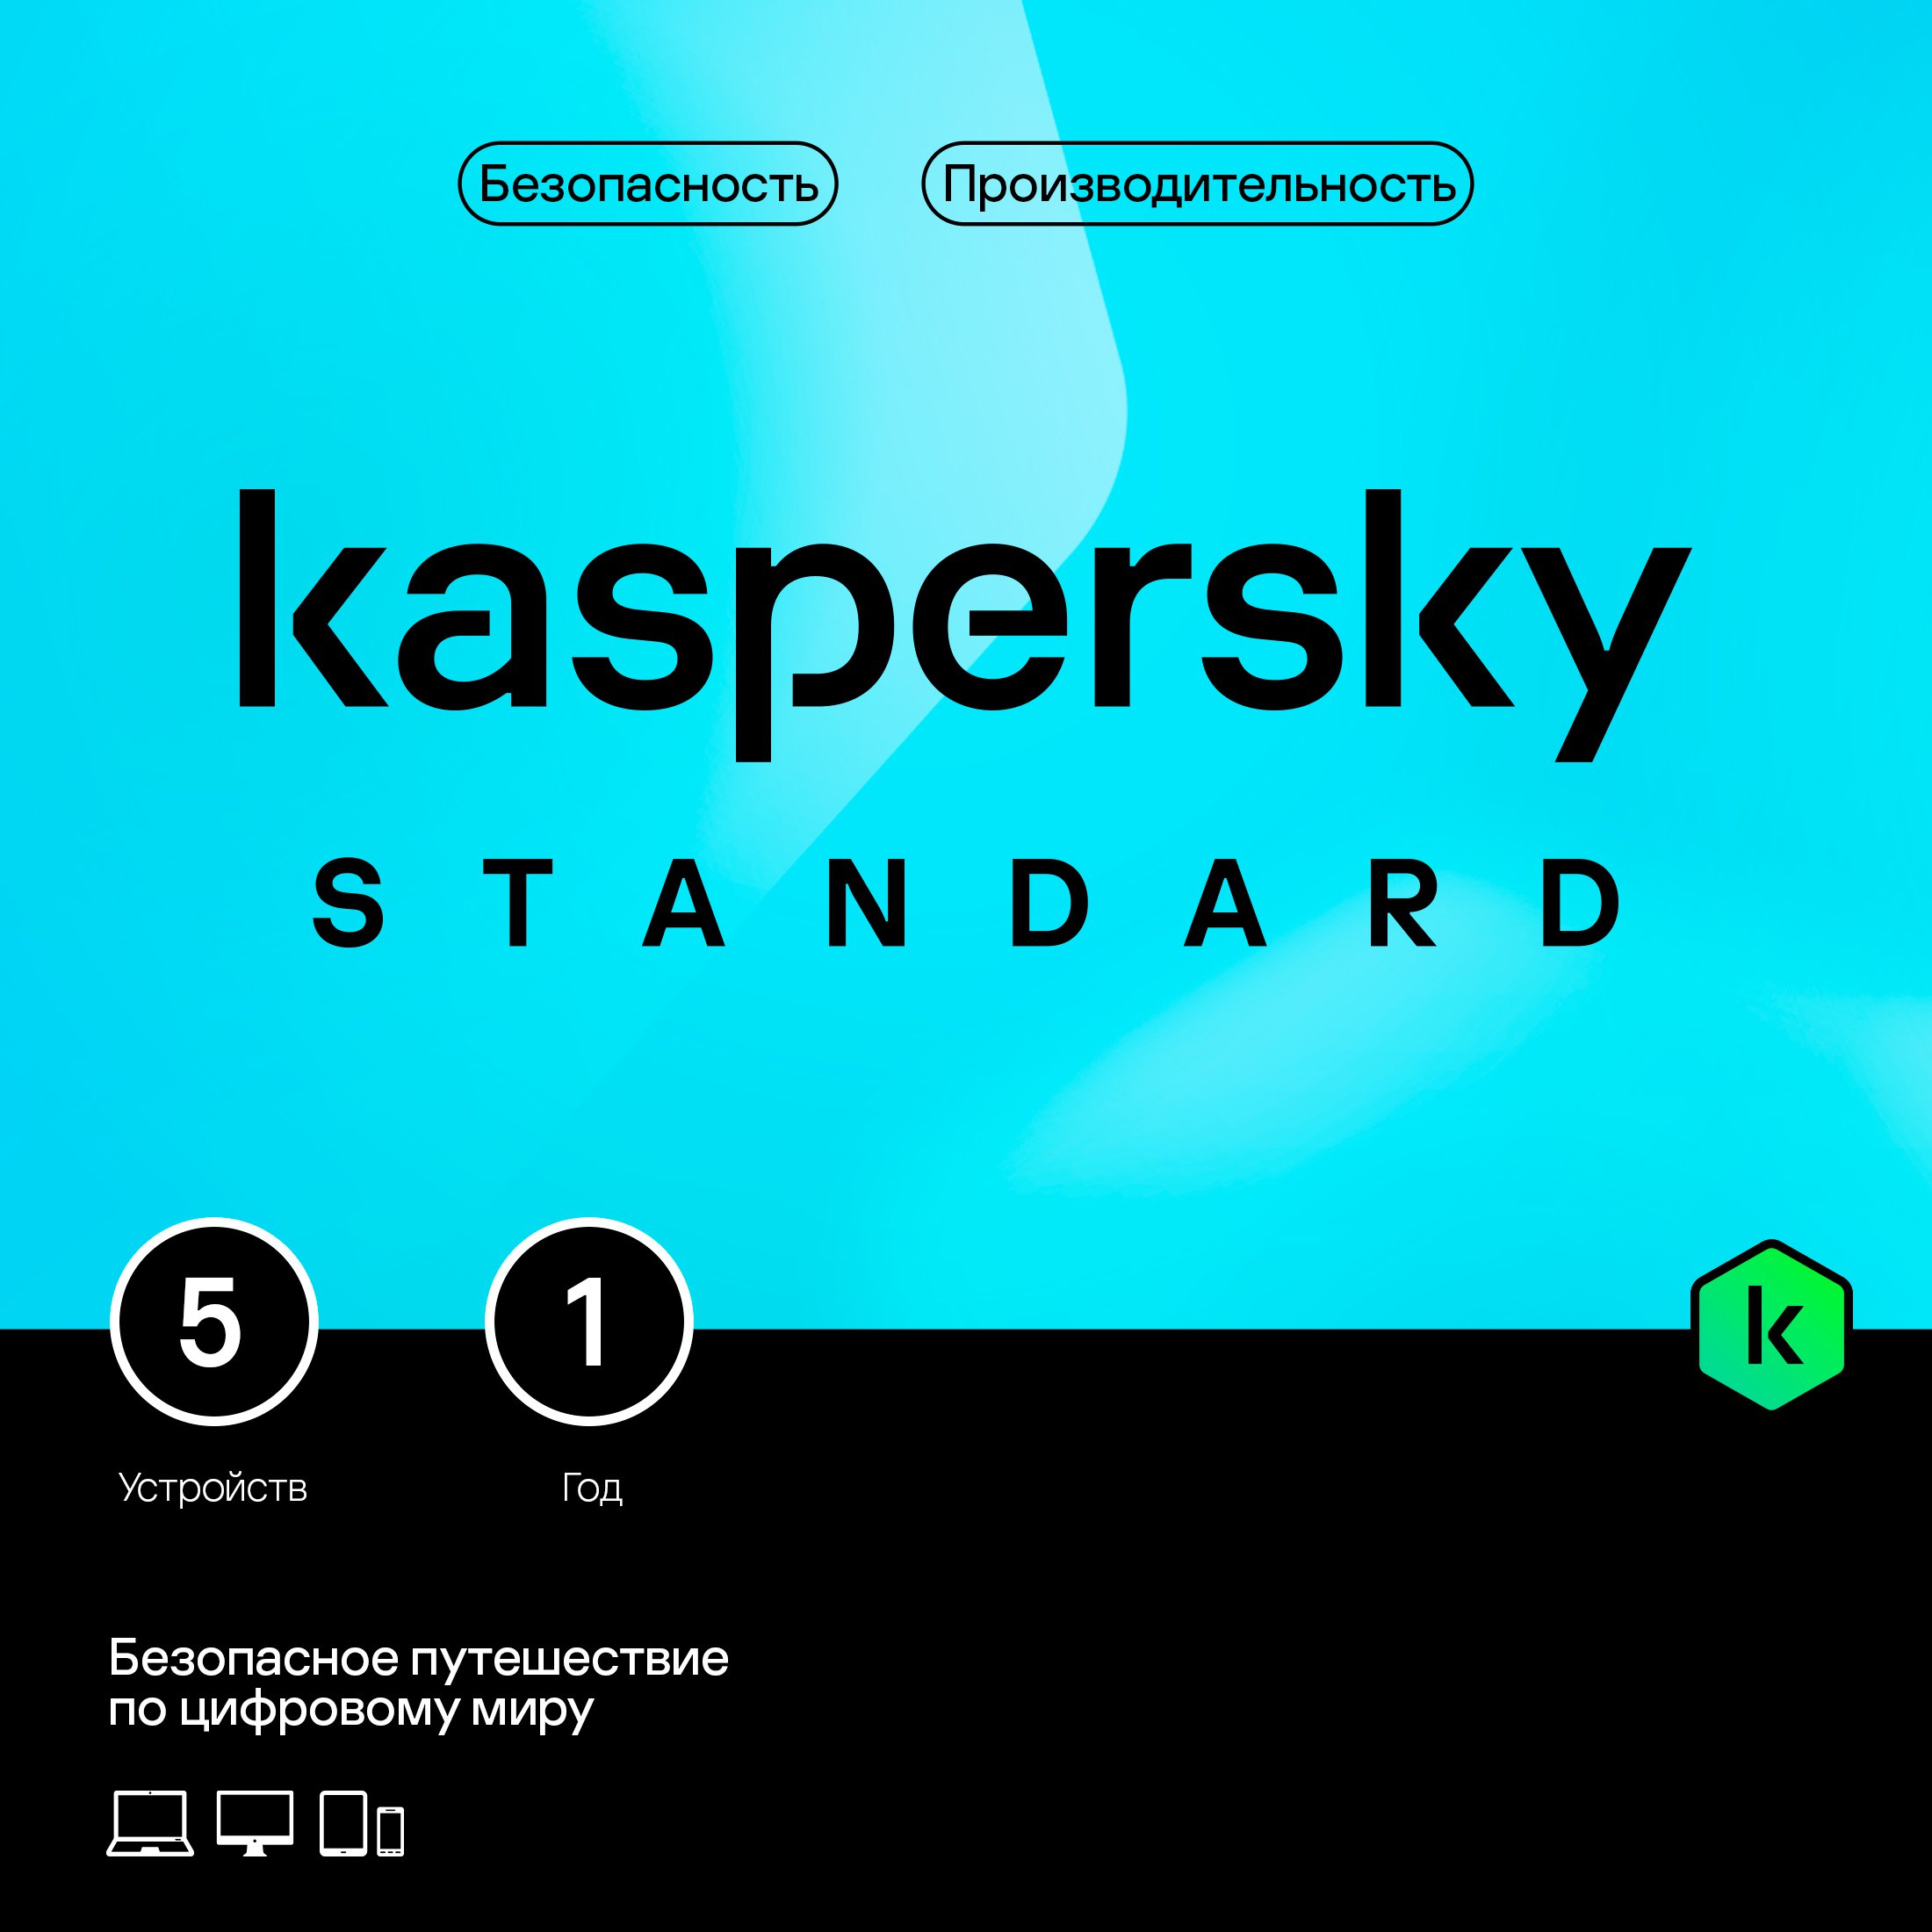 Kaspersky Standard Russian Edition (защита 5 устройств на 1 год) [Base Card] цена и фото